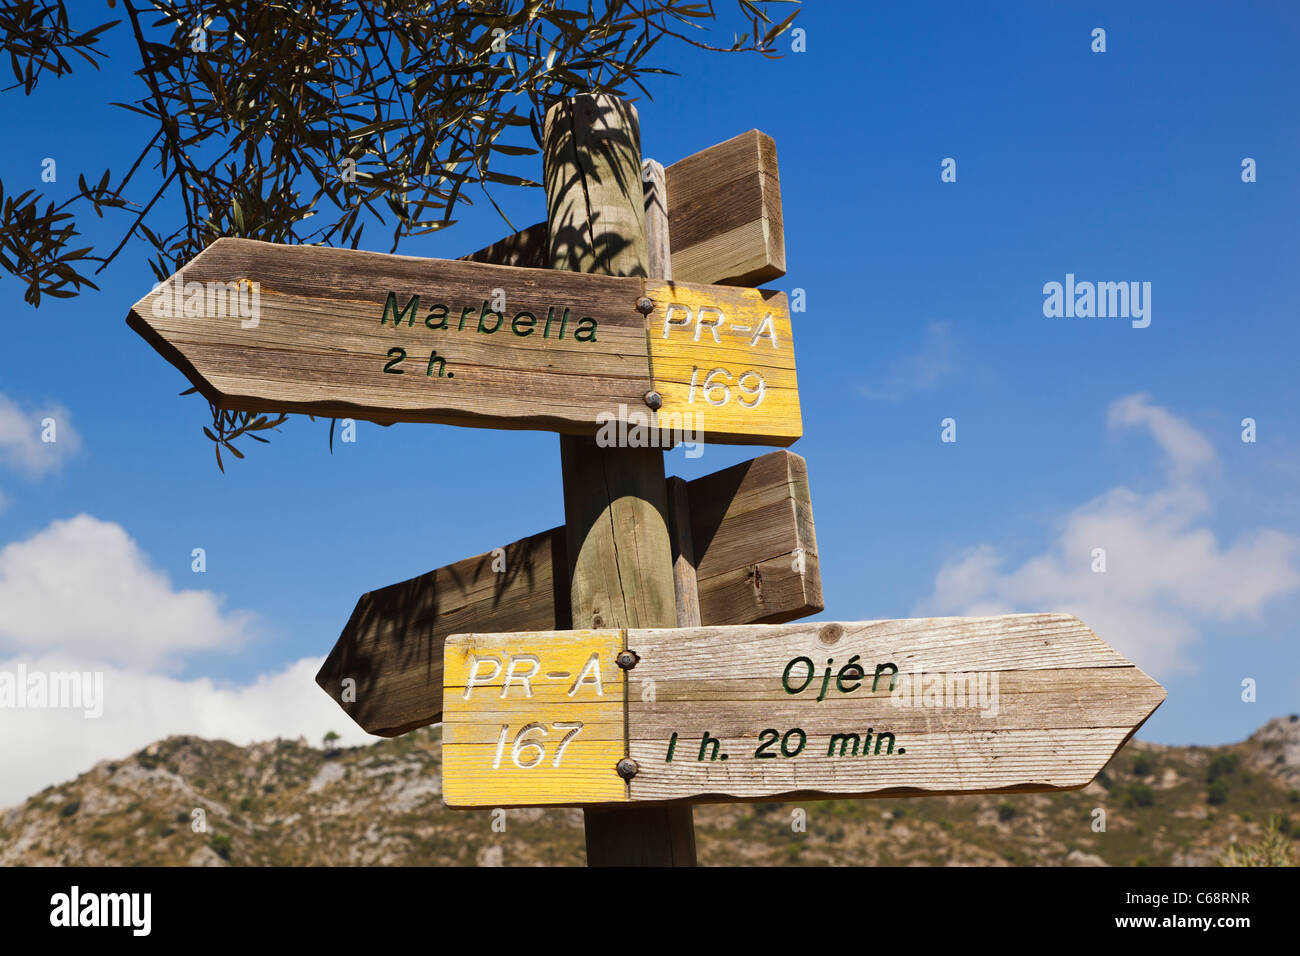 Enseigne sur le chemin Walker dans la Sierra Blanca de Ojen pointant au ROEJ et Marbella. Près de Ojen, Espagne Banque D'Images